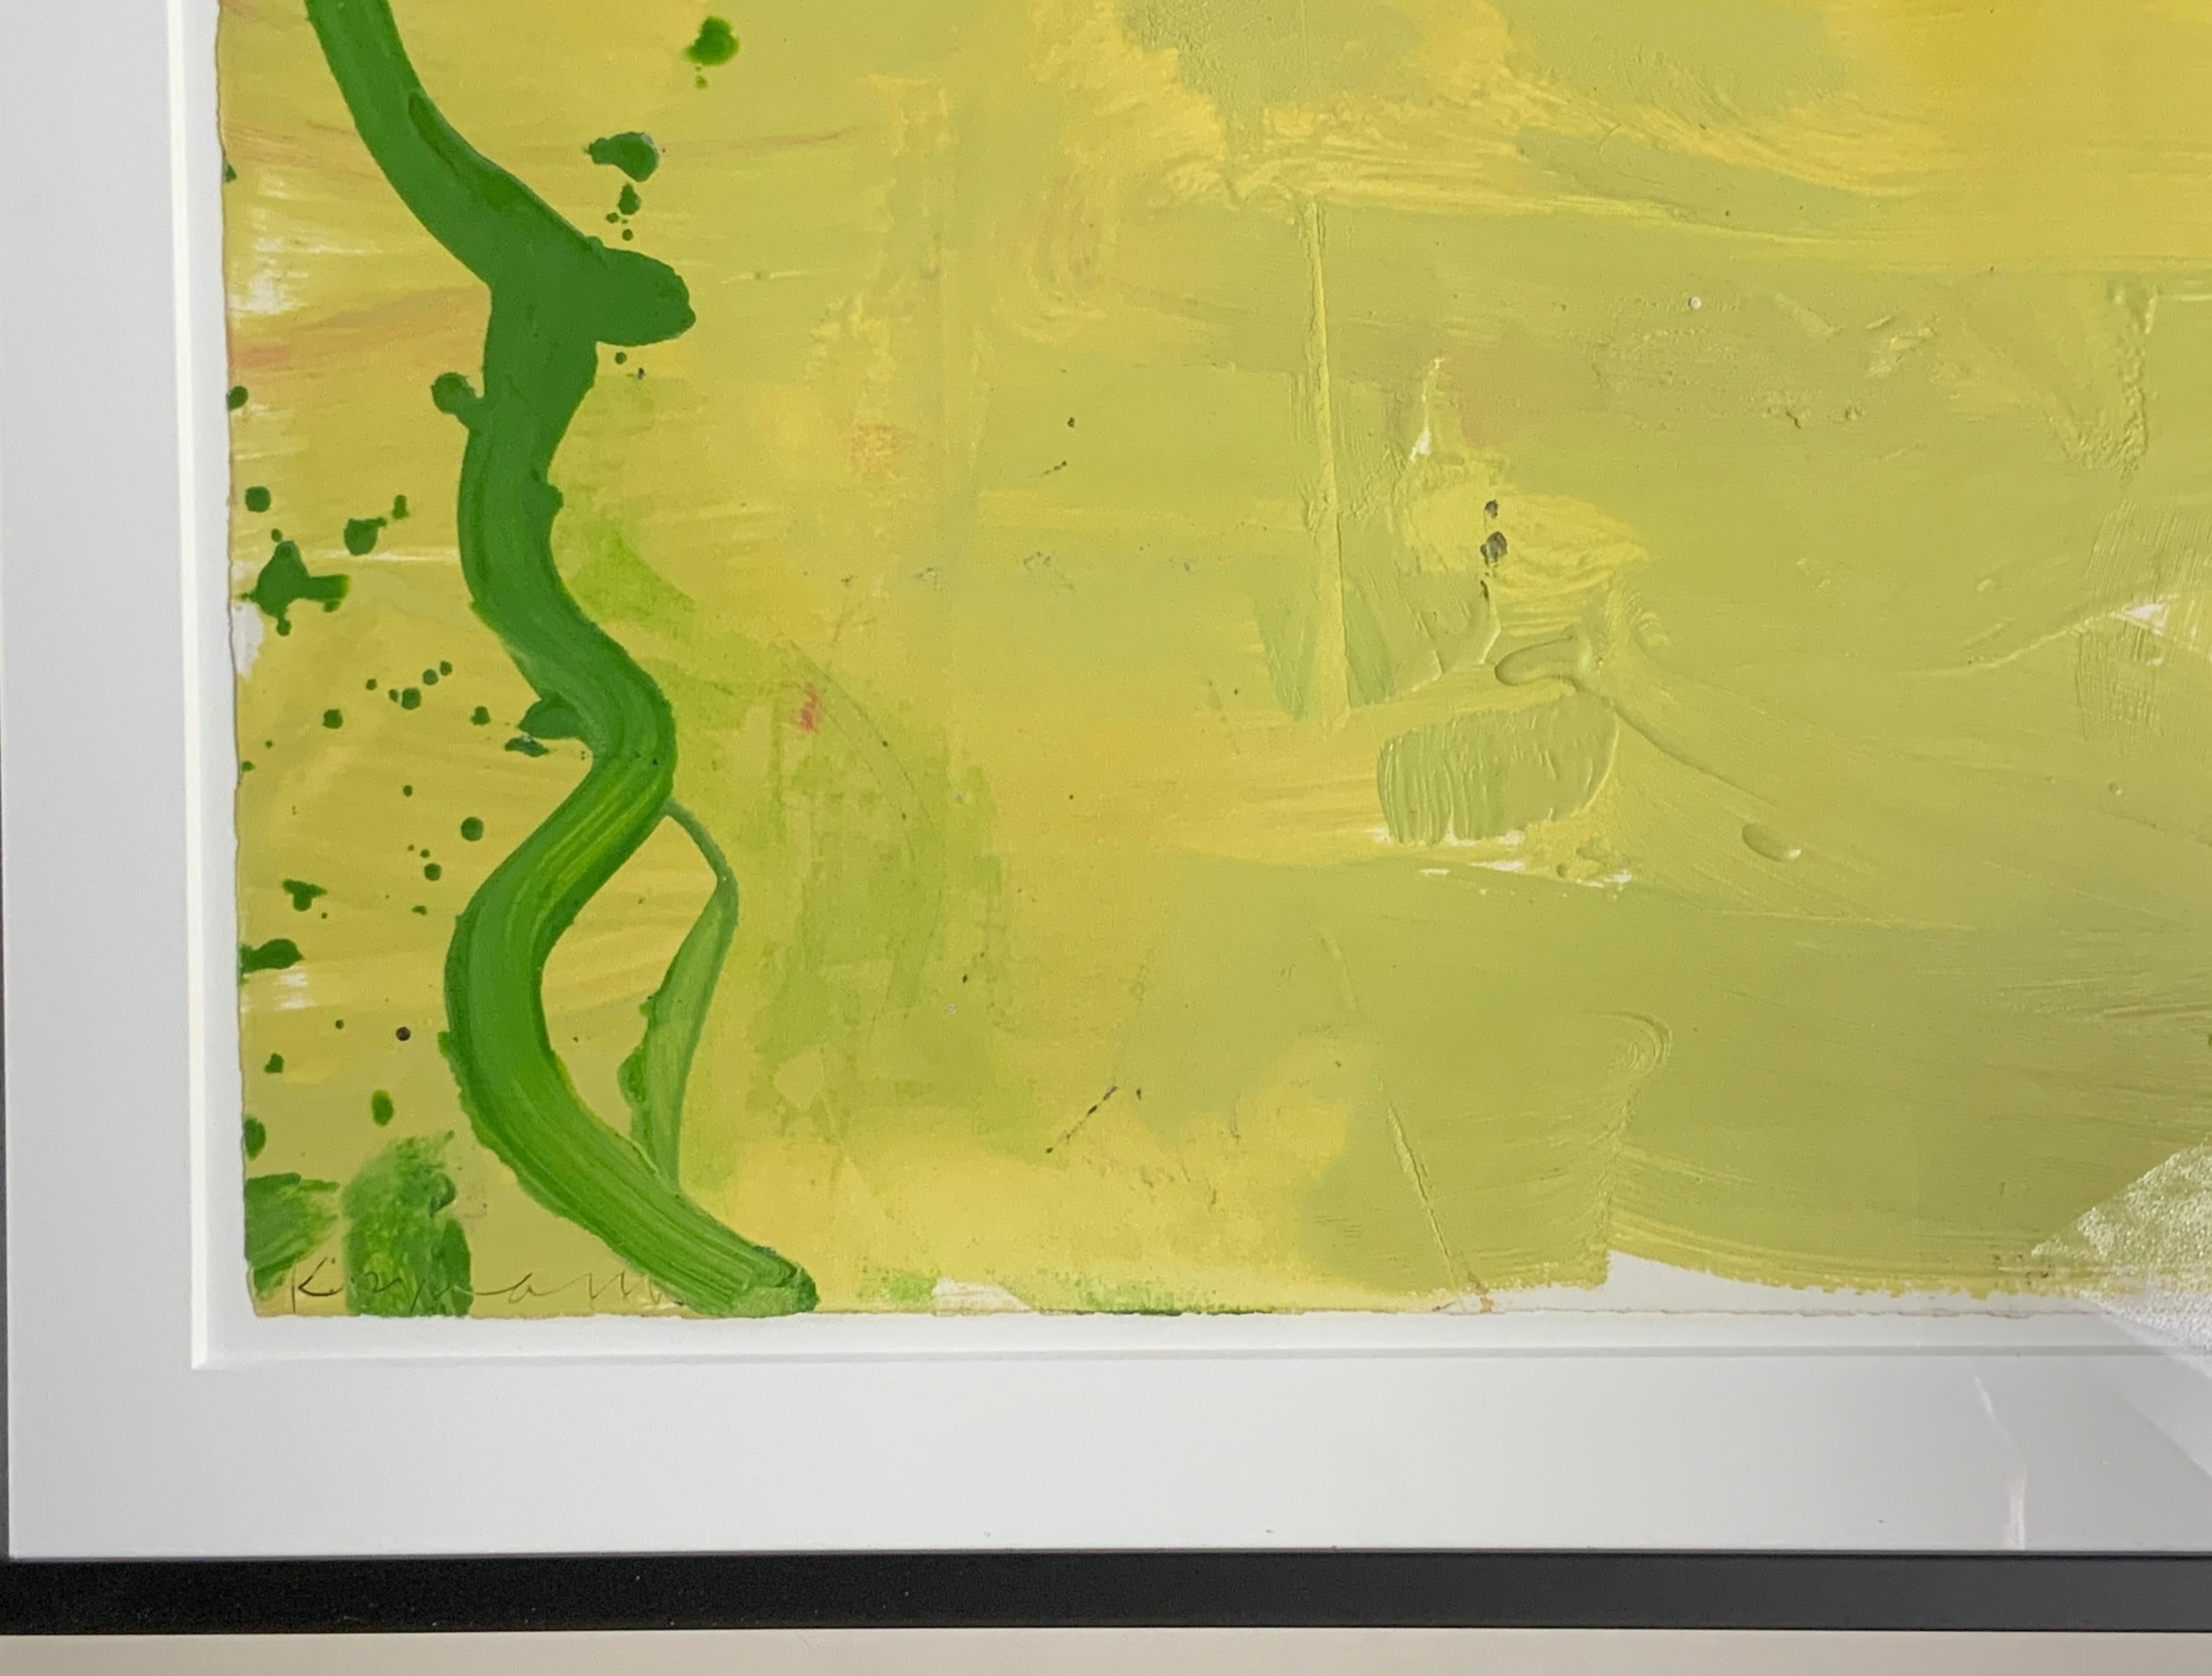 Gary Franks (né en 1951) appartient à la génération des artistes abstraits post-peinture, aux côtés d'artistes notables tels que Frank Stella, Kenneth Noland, Helen Frankenthaler et Ellsworth Kelly, pour n'en citer que quelques-uns.

L'abstraction